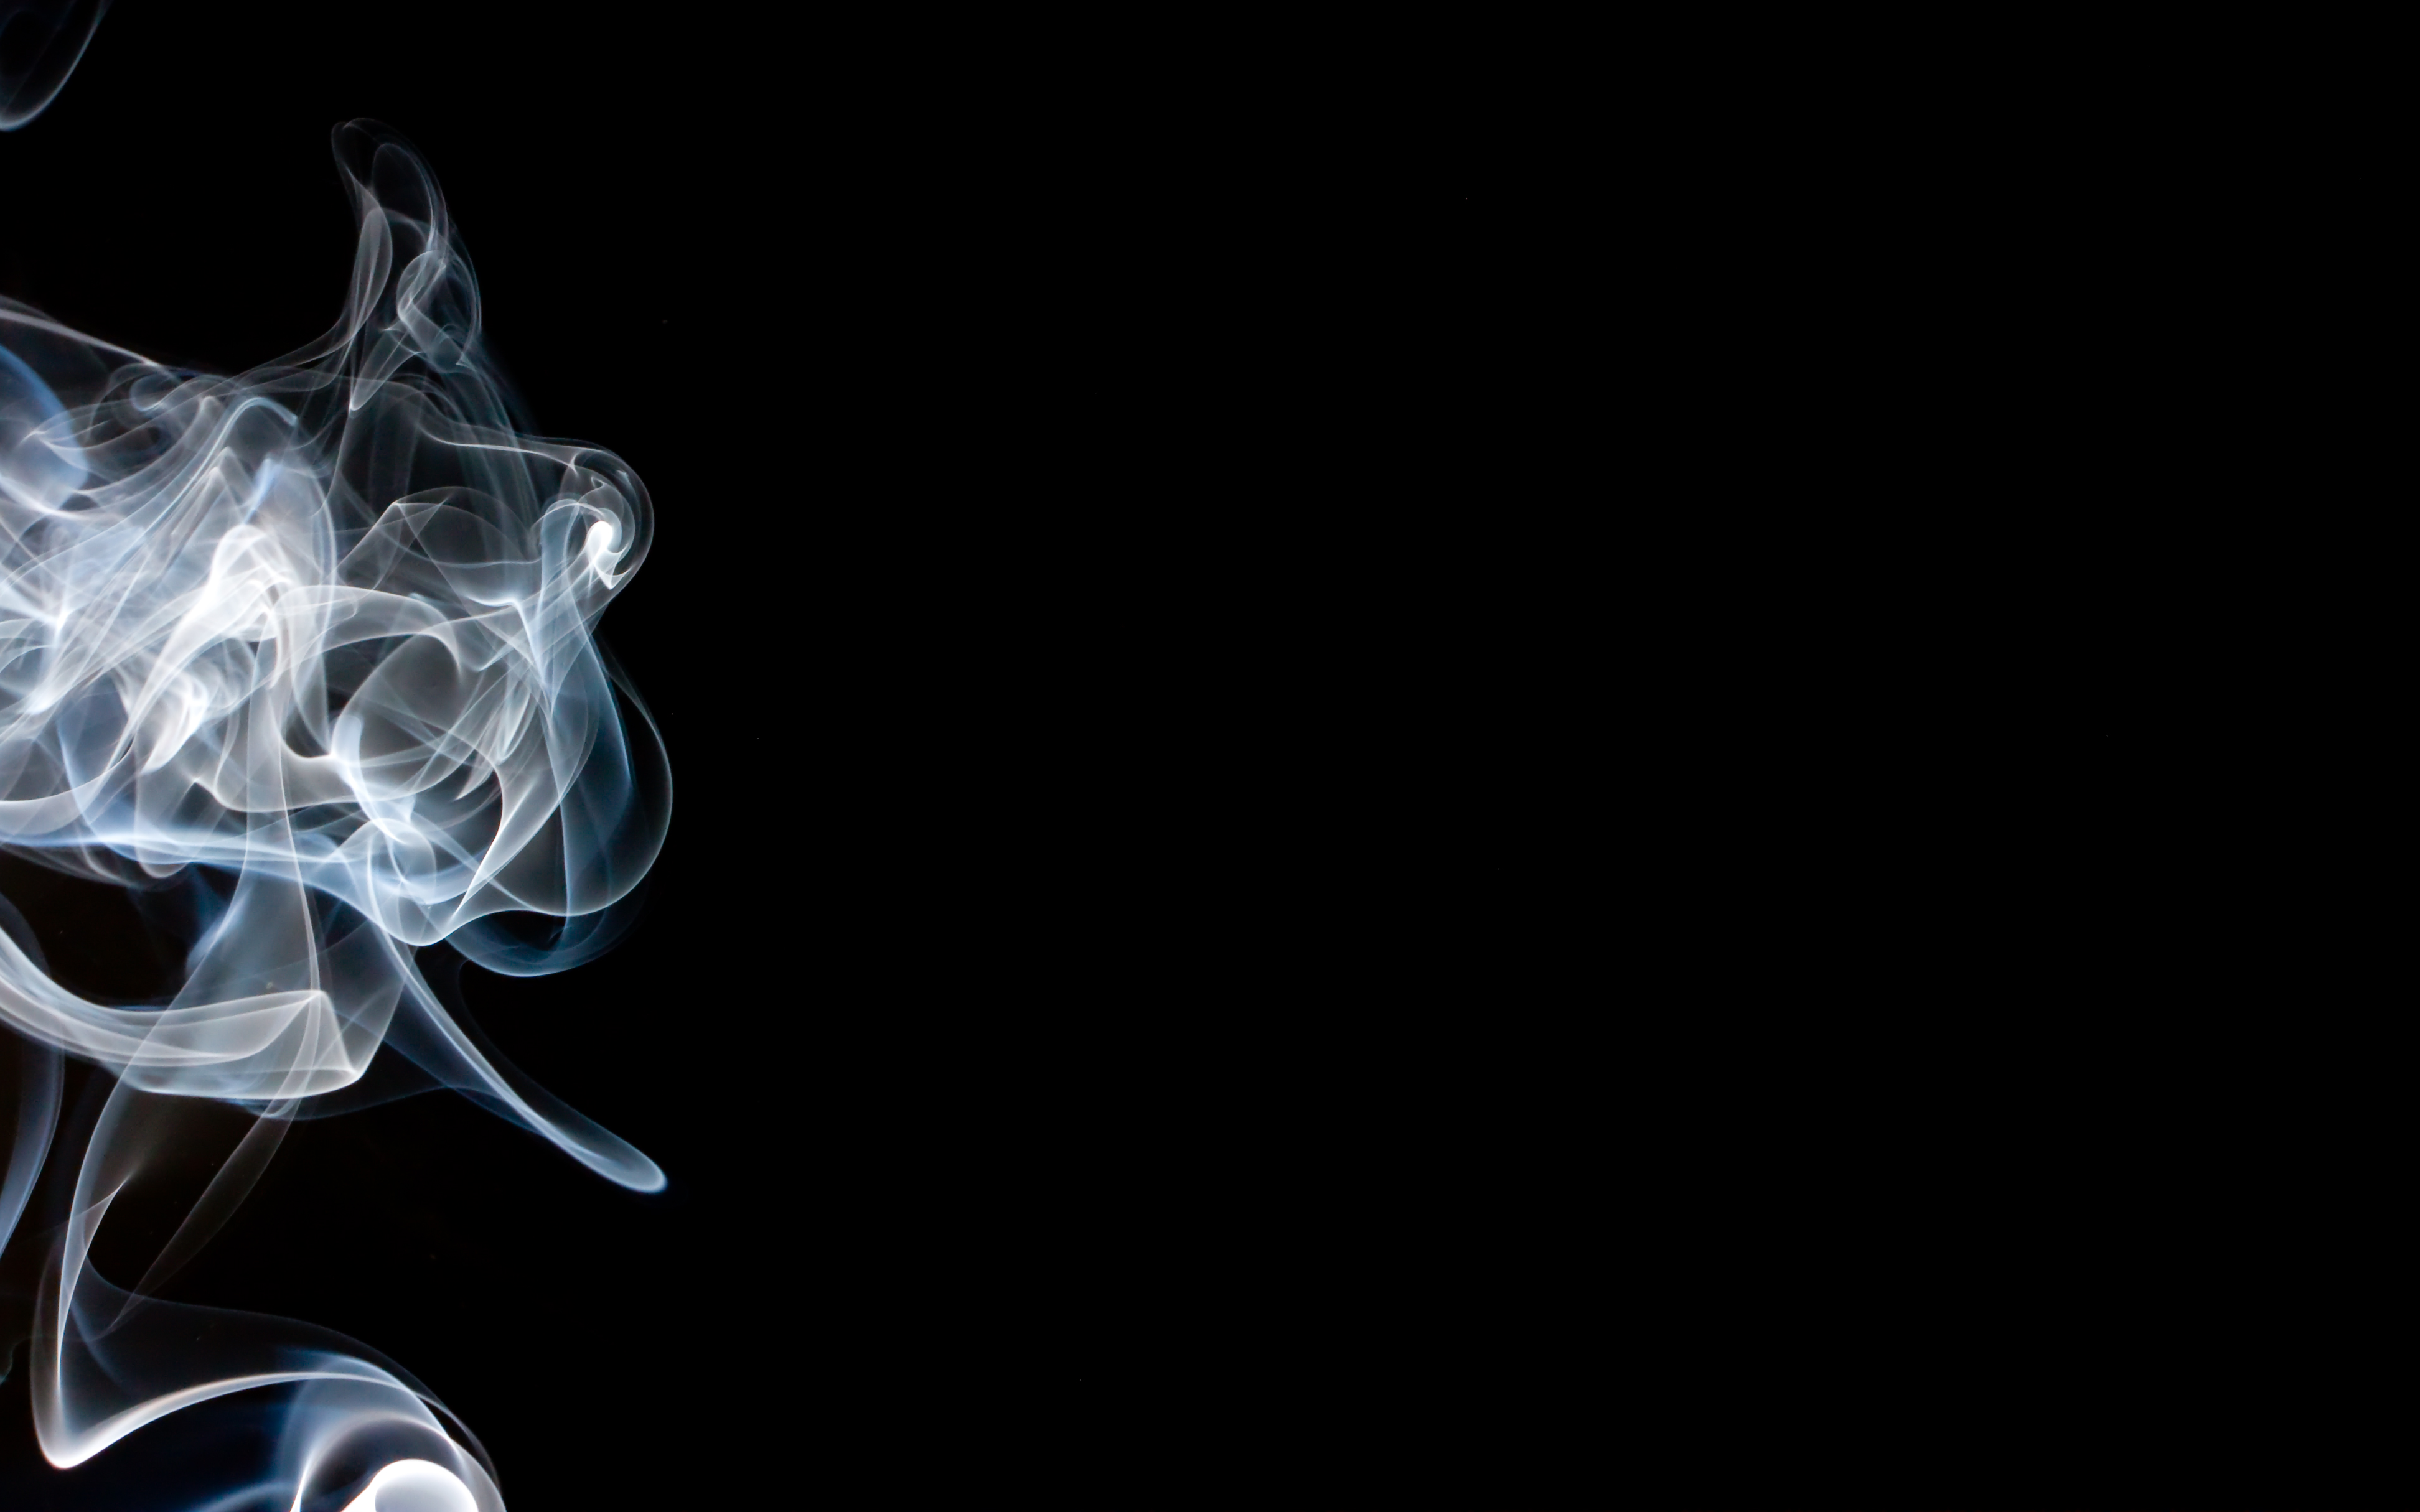 fond d'écran de fumée,fumée,fumeur,noir et blanc,ténèbres,conception graphique